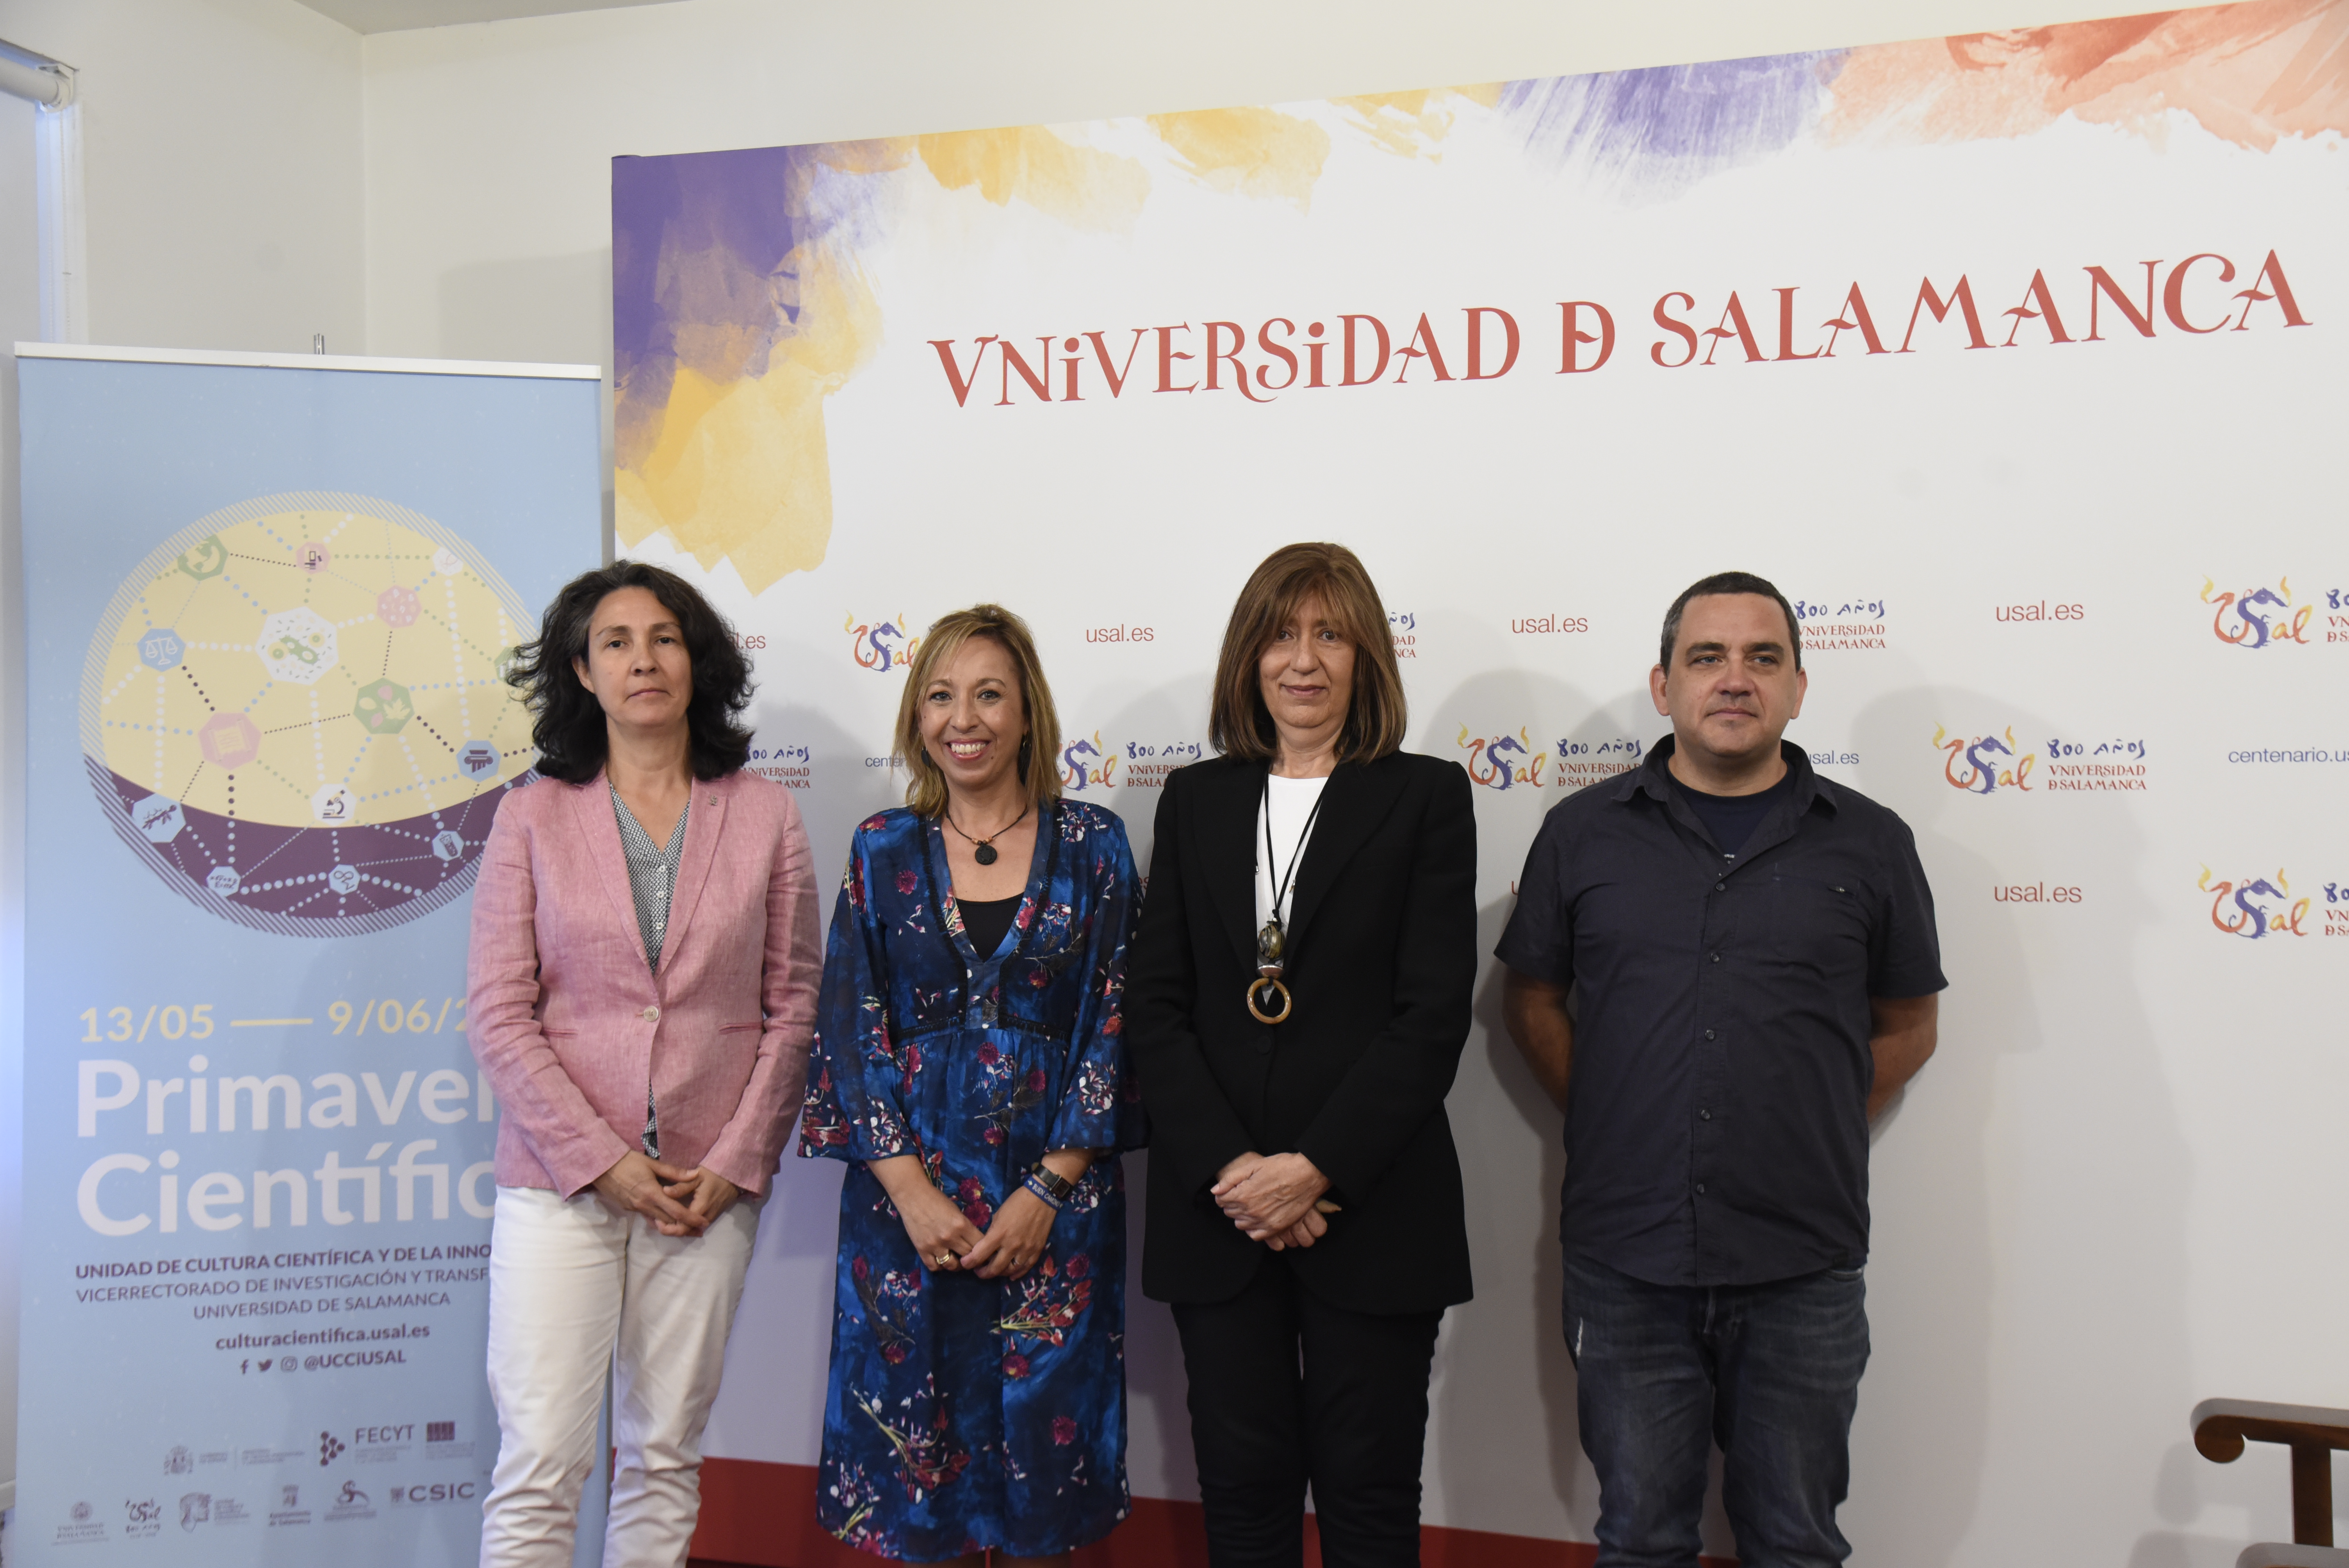 La Primavera Científica 2019 de la universidad de Salamanca programa un mes de actividades dirigidas a fomentar las vocaciones científicas desde los 3 años